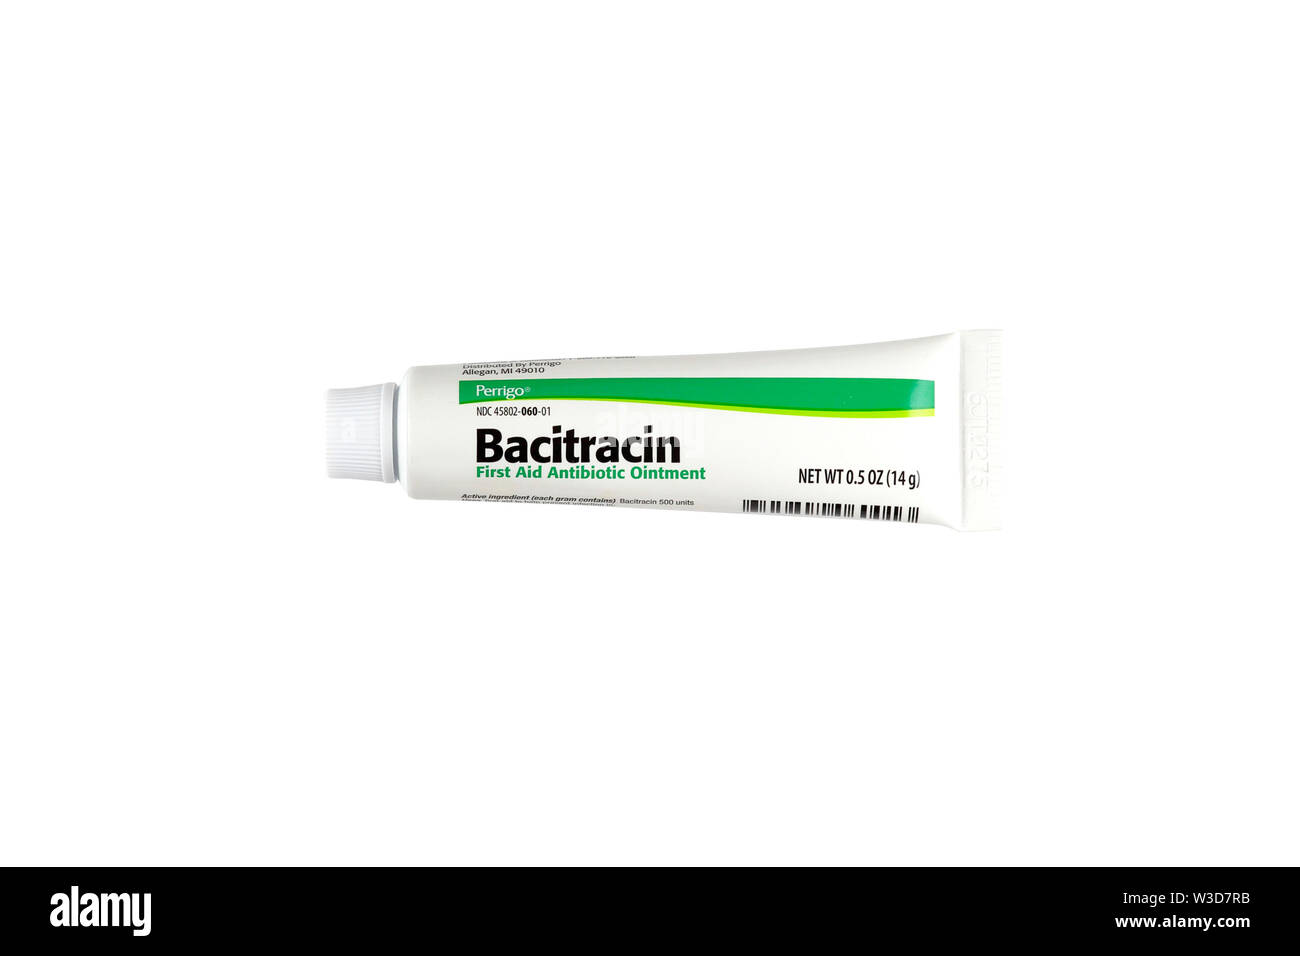 Eine Tube Bacitracin antibiotische Salbe isoliert auf weißem Hintergrund. Ausschnitt zur Illustration und redaktionellen Verwendung. Stockfoto